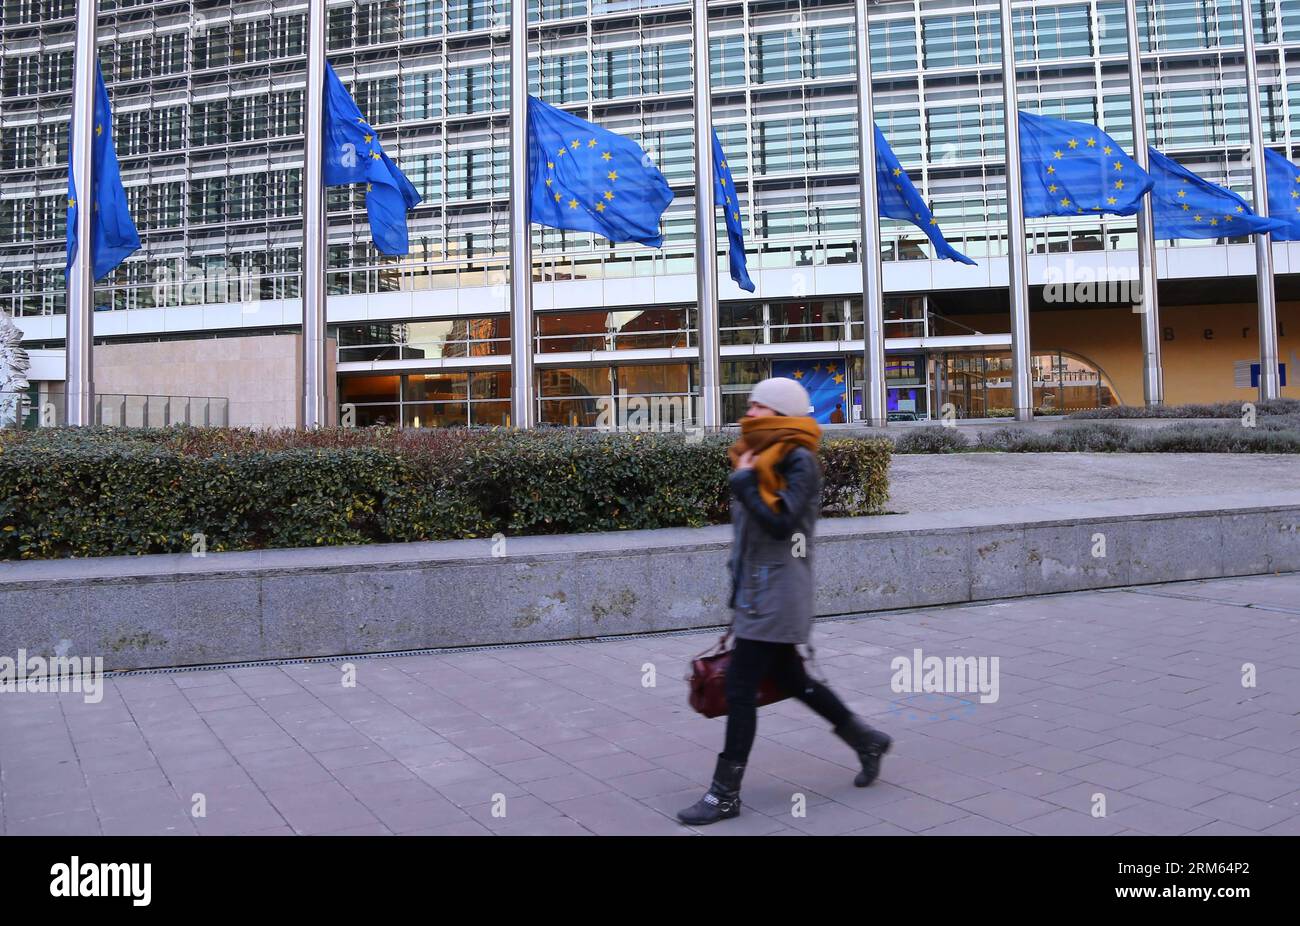 Bildnummer: 60802151 Datum: 06.12.2013 Copyright: imago/Xinhua (131206) -- BRUXELLES, 6 dicembre 2013 (Xinhua) -- Una donna cammina oltre le bandiere abbassate a metà staff per la morte dell'ex presidente sudafricano Nelson Mandela davanti alla sede centrale dell'UE a Bruxelles, in Belgio, 6 dicembre 2013. (Xinhua/Gong Bing) (djj) BELGIO-BRUXELLES-EU-HALF-STAFF-MANDELA PUBLICATIONxNOTxINxCHN Gesellschaft Fahne Halbmast RSA x0x xsk 2013 quer premiumd Foto Stock